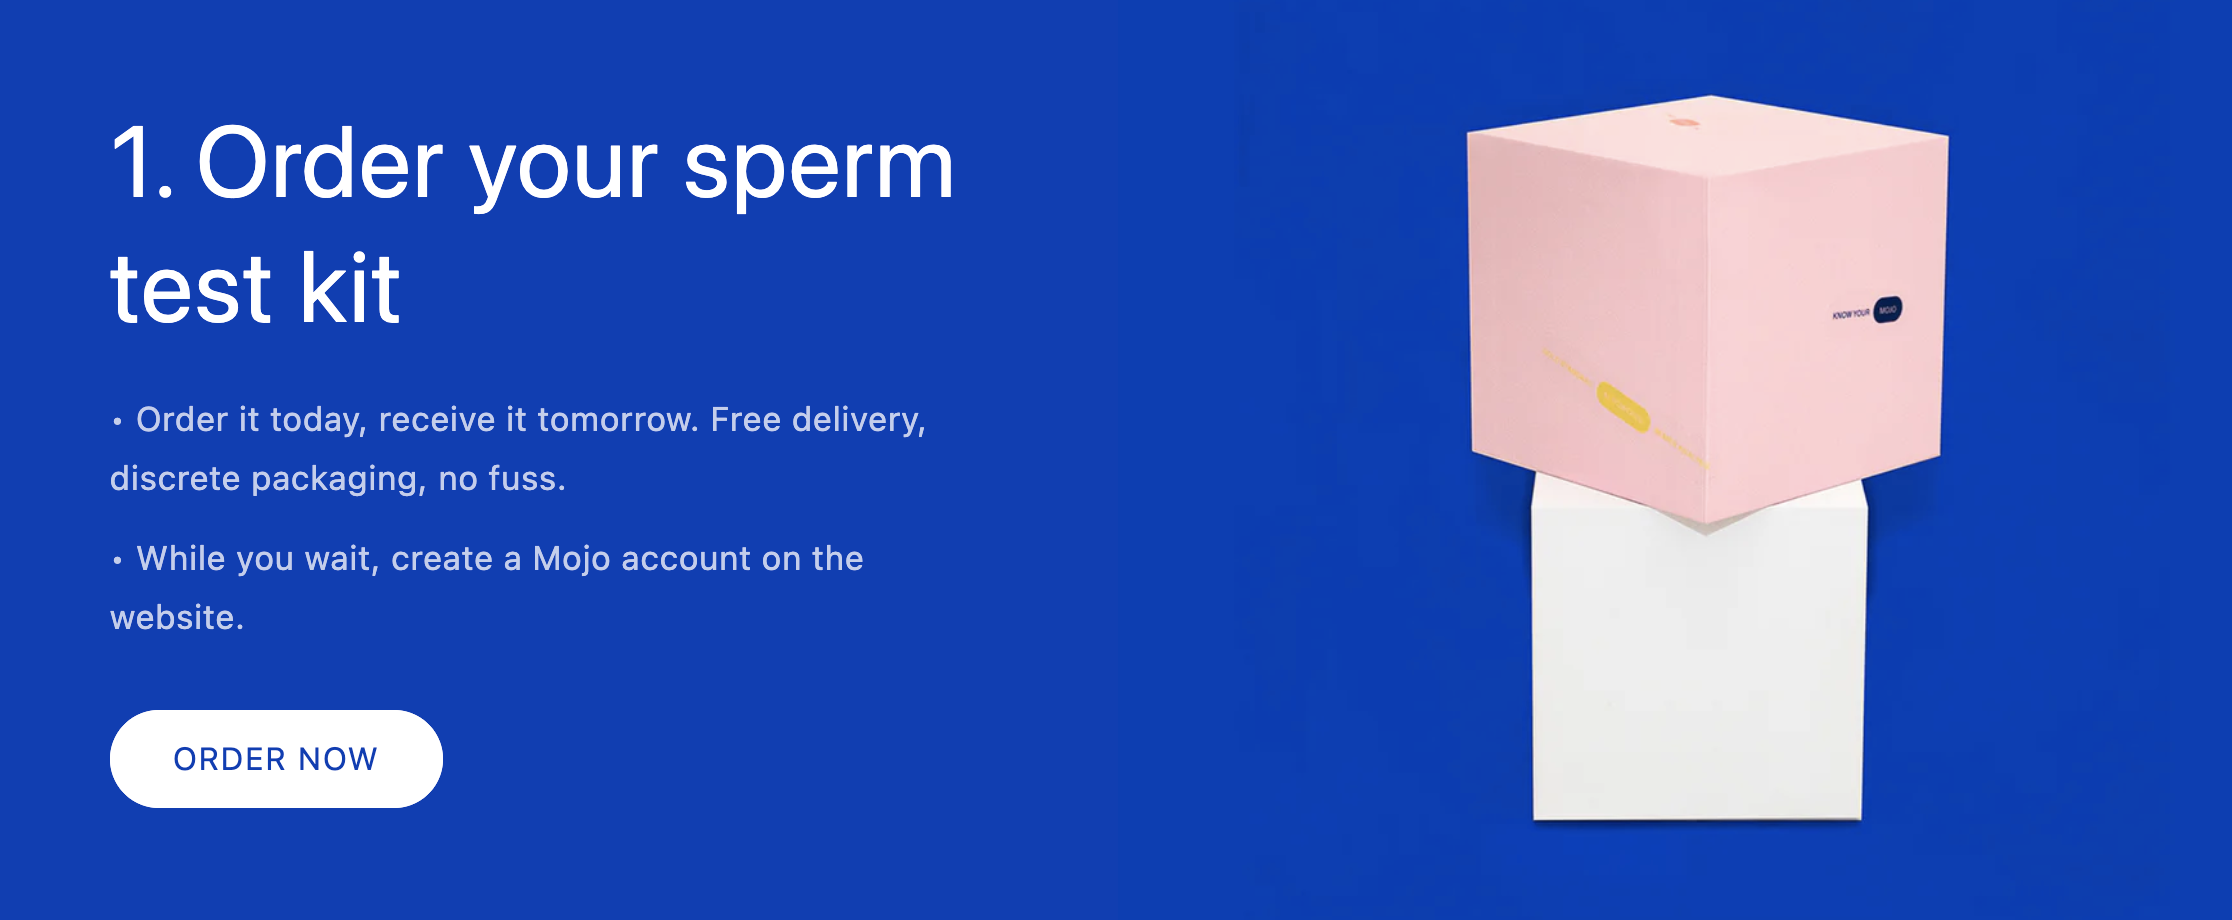 Mojo Home Sperm Test